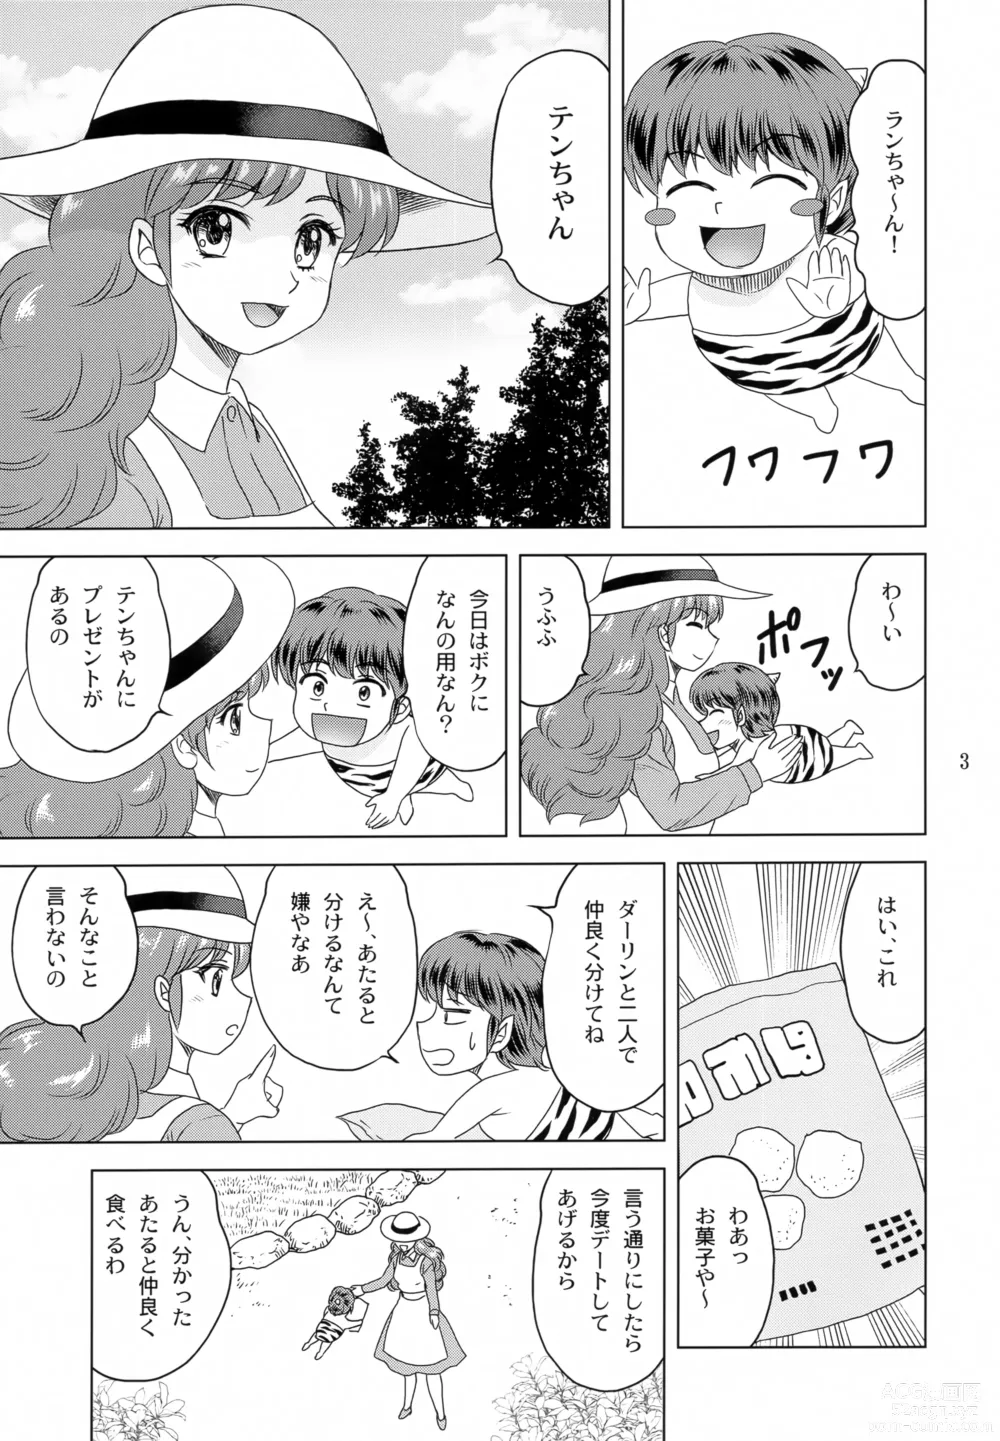 Page 2 of doujinshi Darling ga Ippai